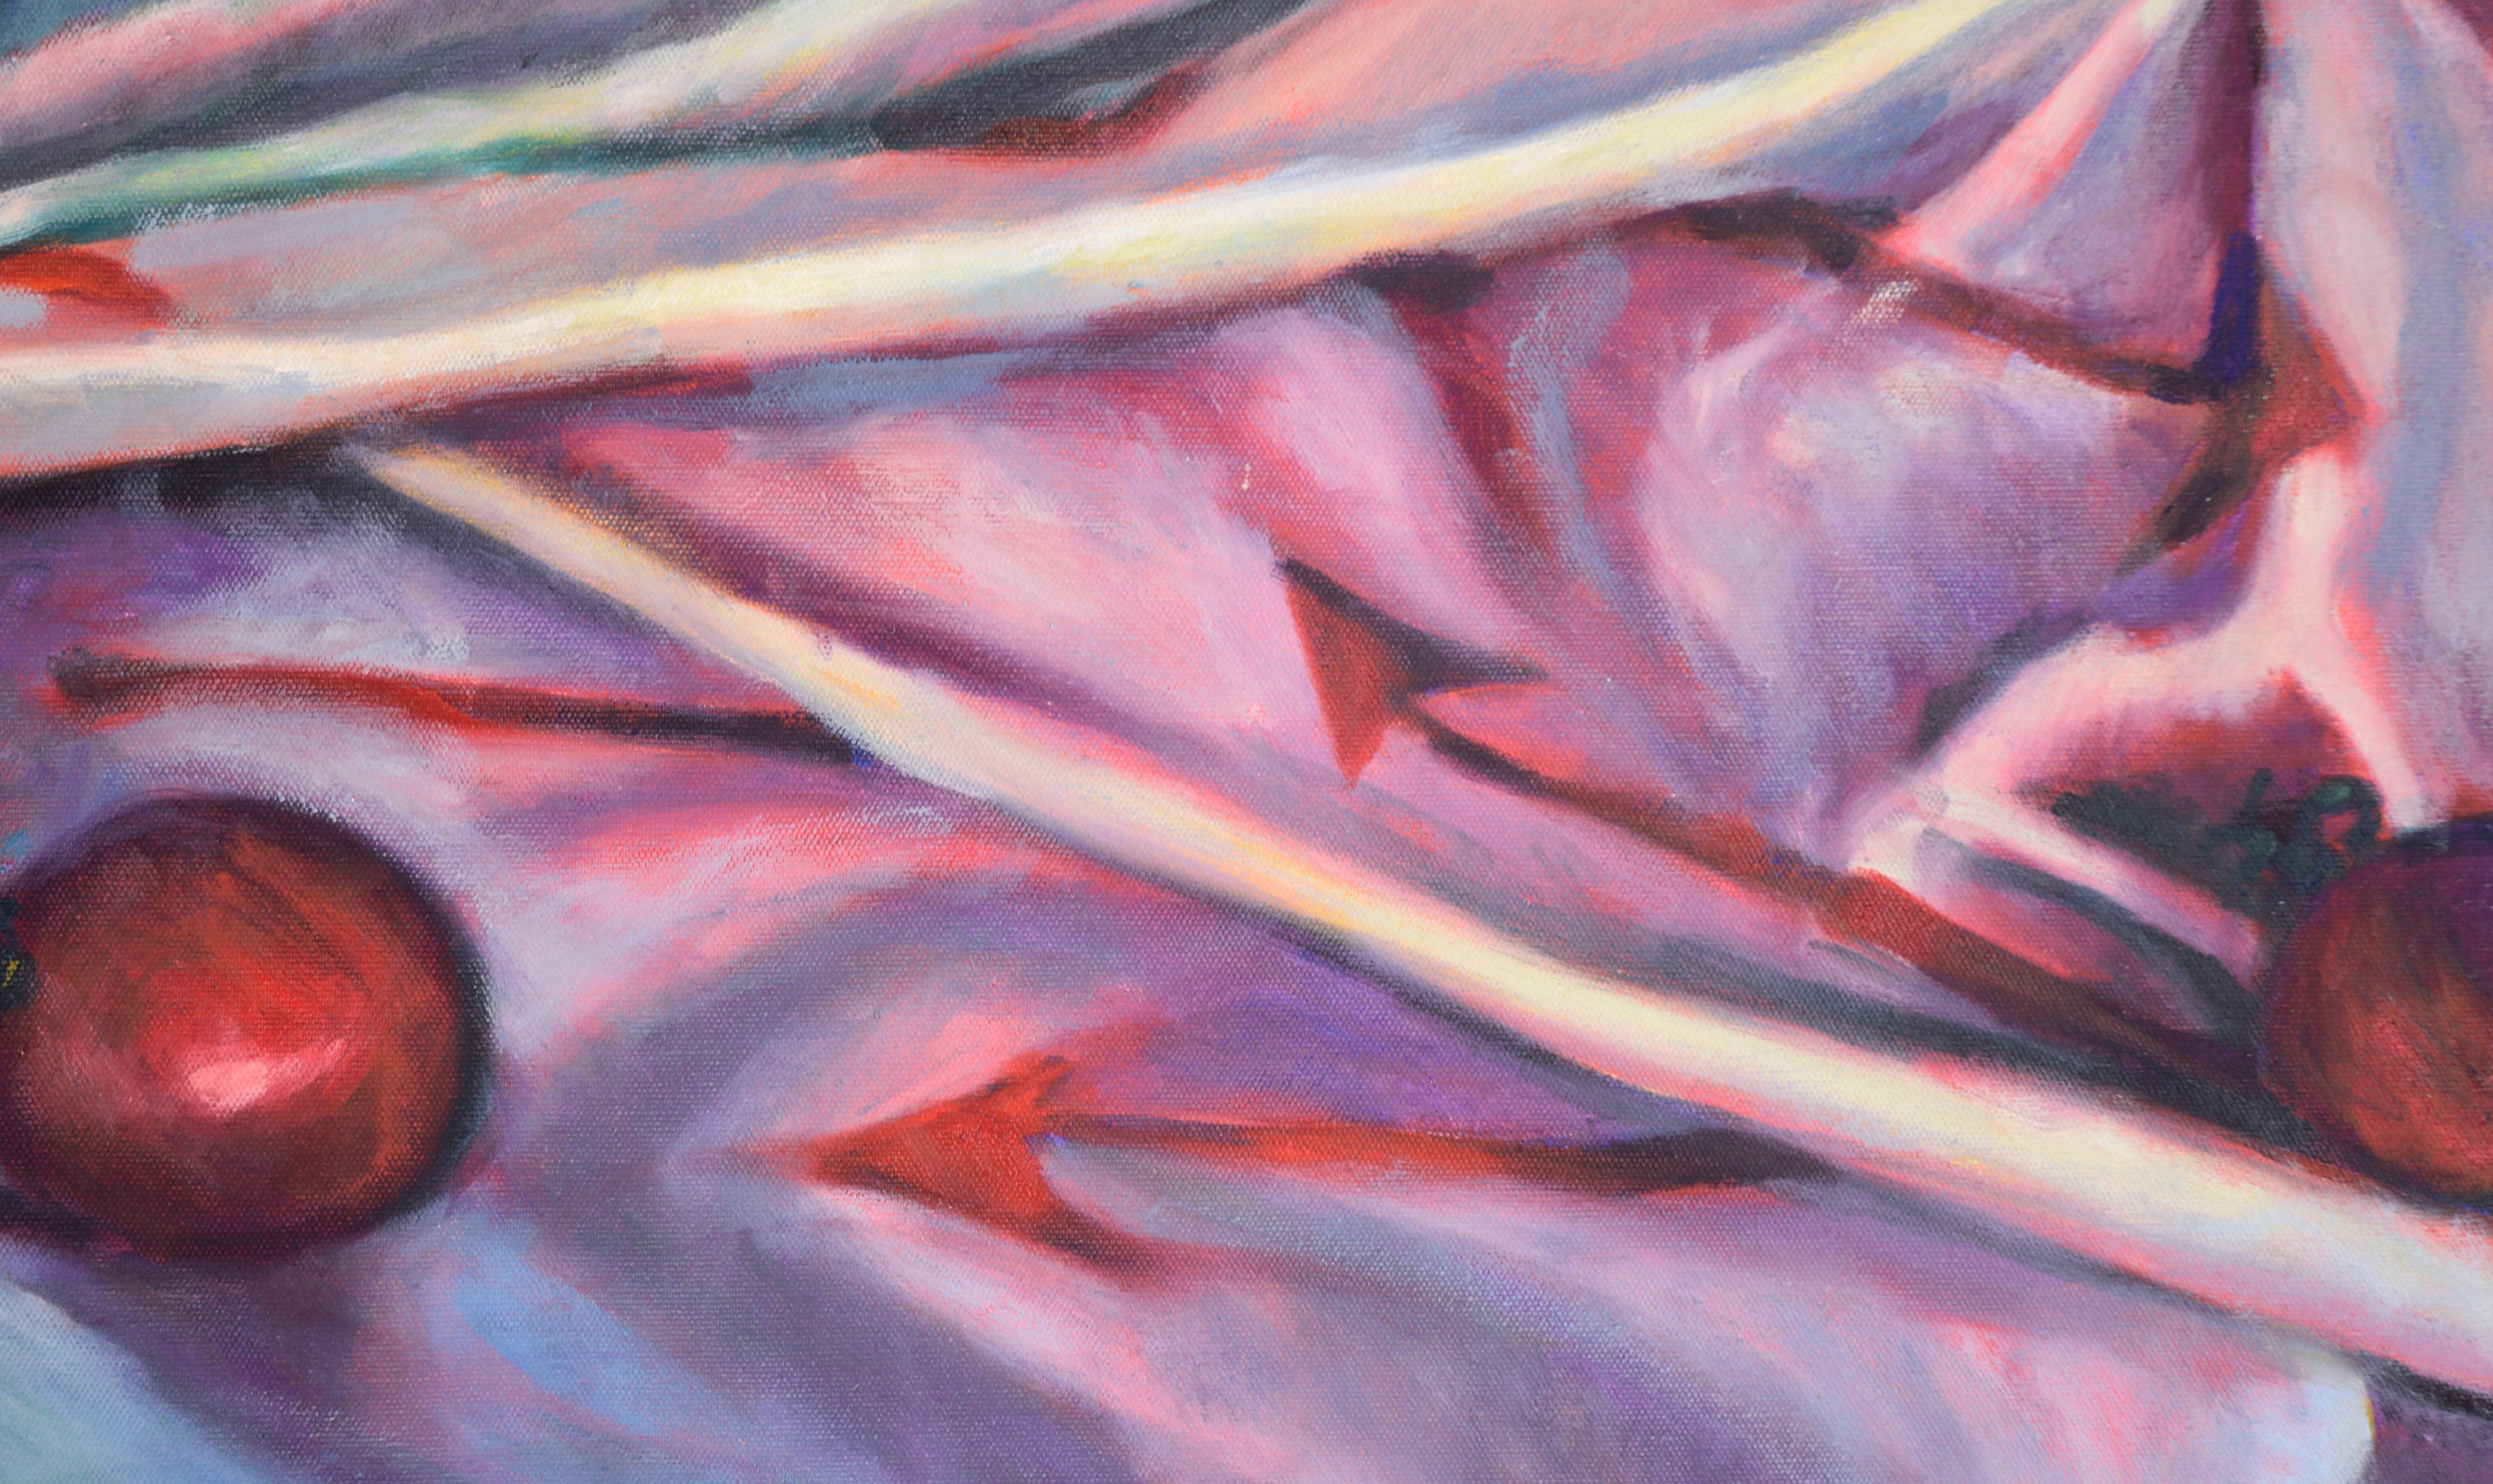 Pfeile und Kirschtomaten - Zeitgenössisches Stillleben in Öl auf Leinwand

Farbenfrohes Stilleben eines unbekannten Künstlers (20. Jahrhundert). Ein blaues und magentafarbenes Tuch mit roten Pfeilen ist über einem Tisch ausgebreitet. Der Stoff weist